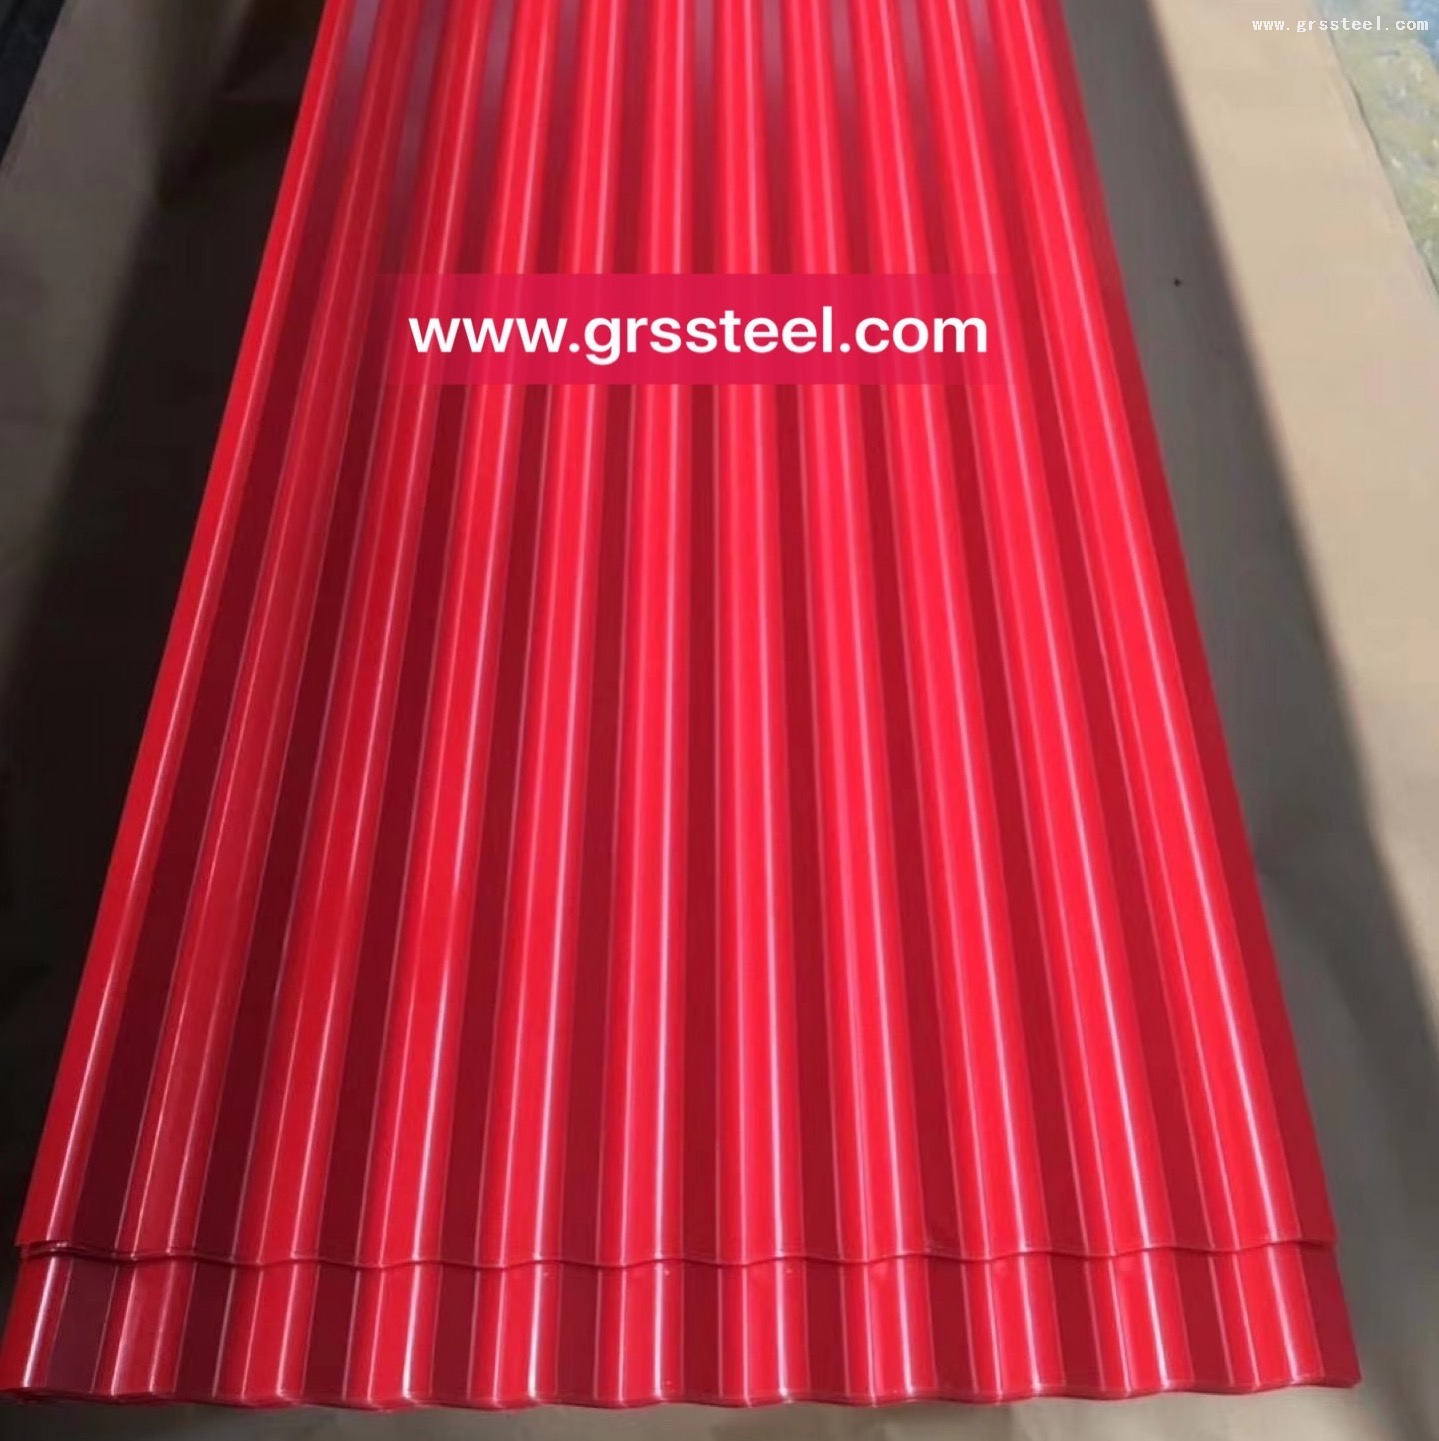 PPGI Corrugated Roofing Sheet Buy galvanized plate, galvanized sheet price, galvanized zinc